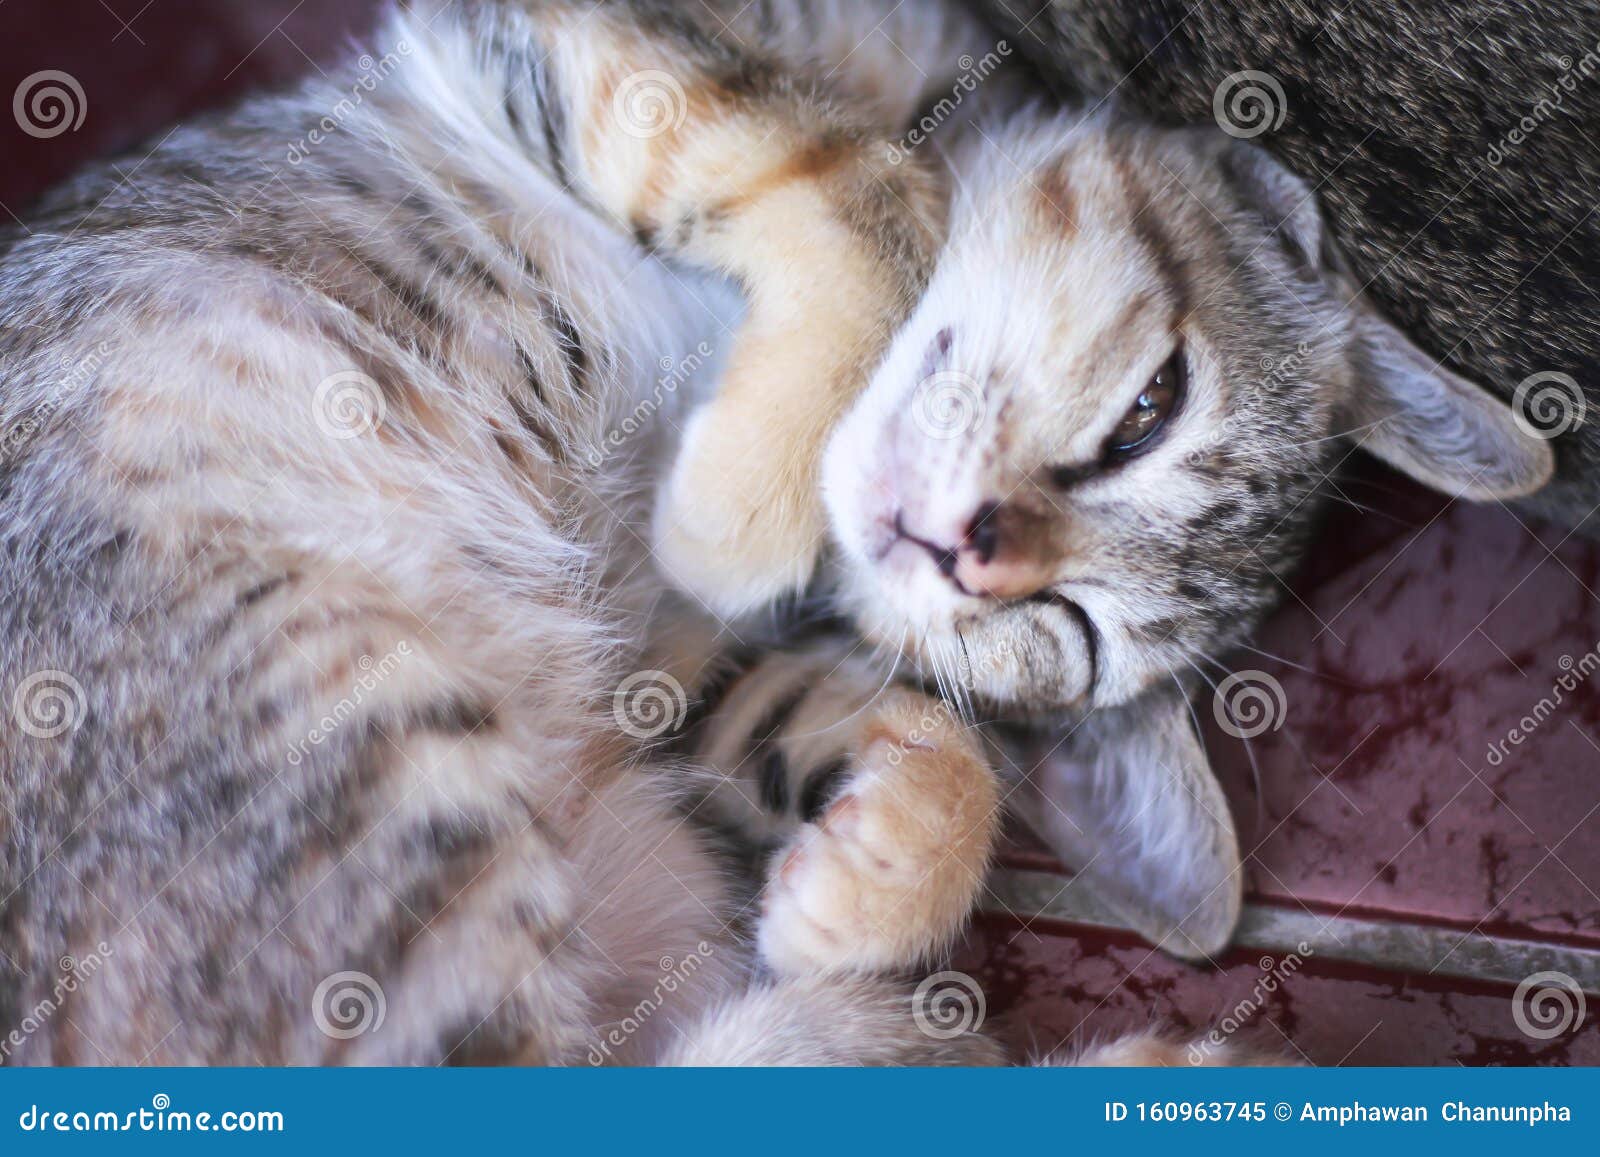 Un Bebe Chat Endormi Sur Le Sol Animal A L Arriere Plan Image Stock Image Du Asie Heureux